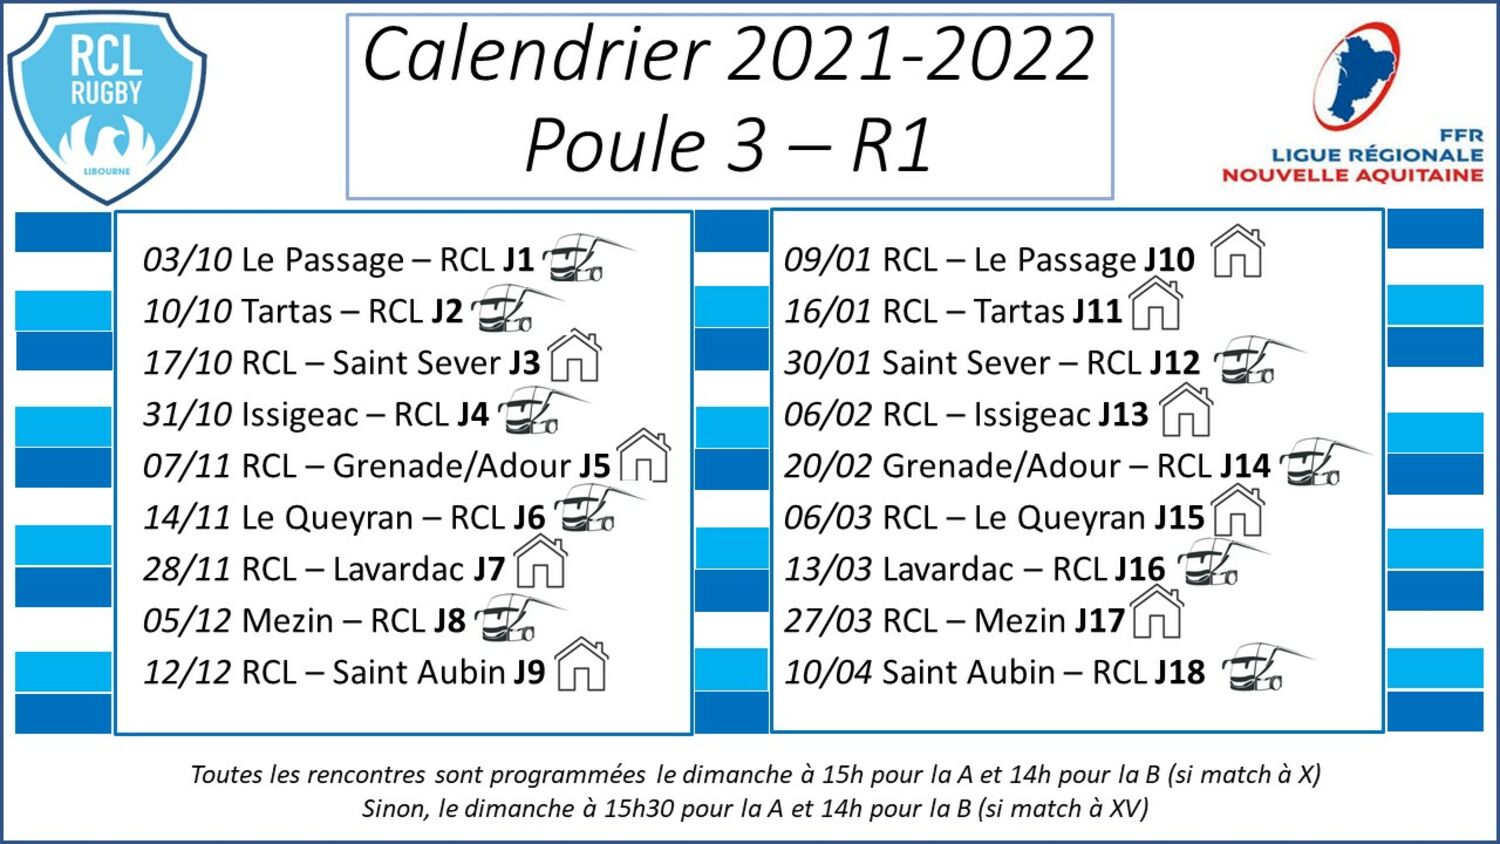 Le calendrier de la poule 3 de R1 du RCL, version 2021-2022